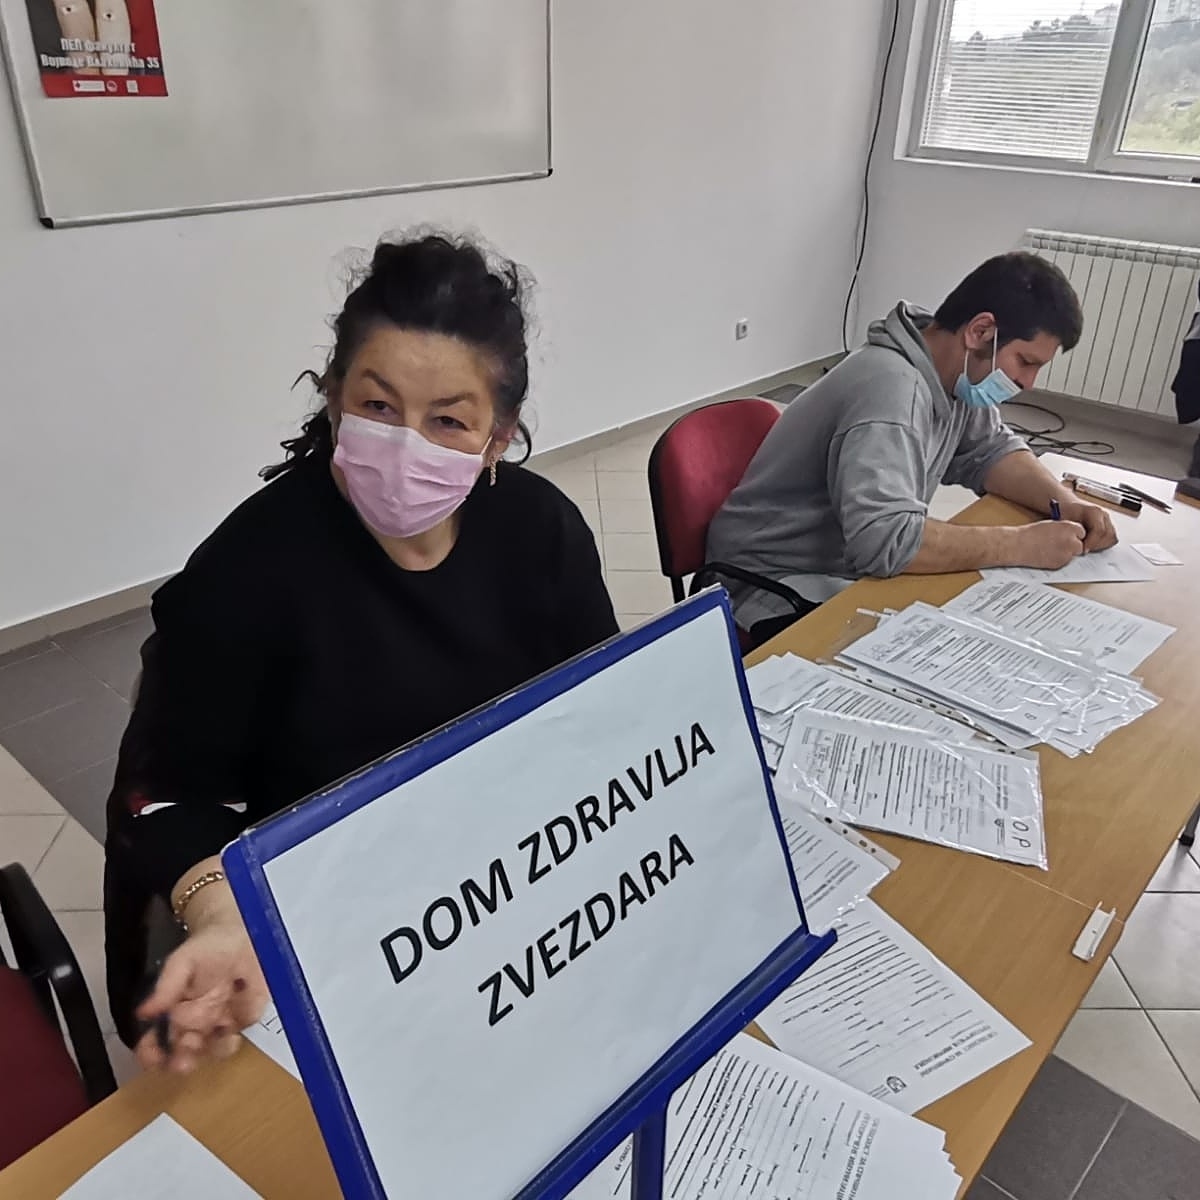 Veliki Odziv na Vakcinaciju u Naselju Vojvode Vlahović na Zvezdari